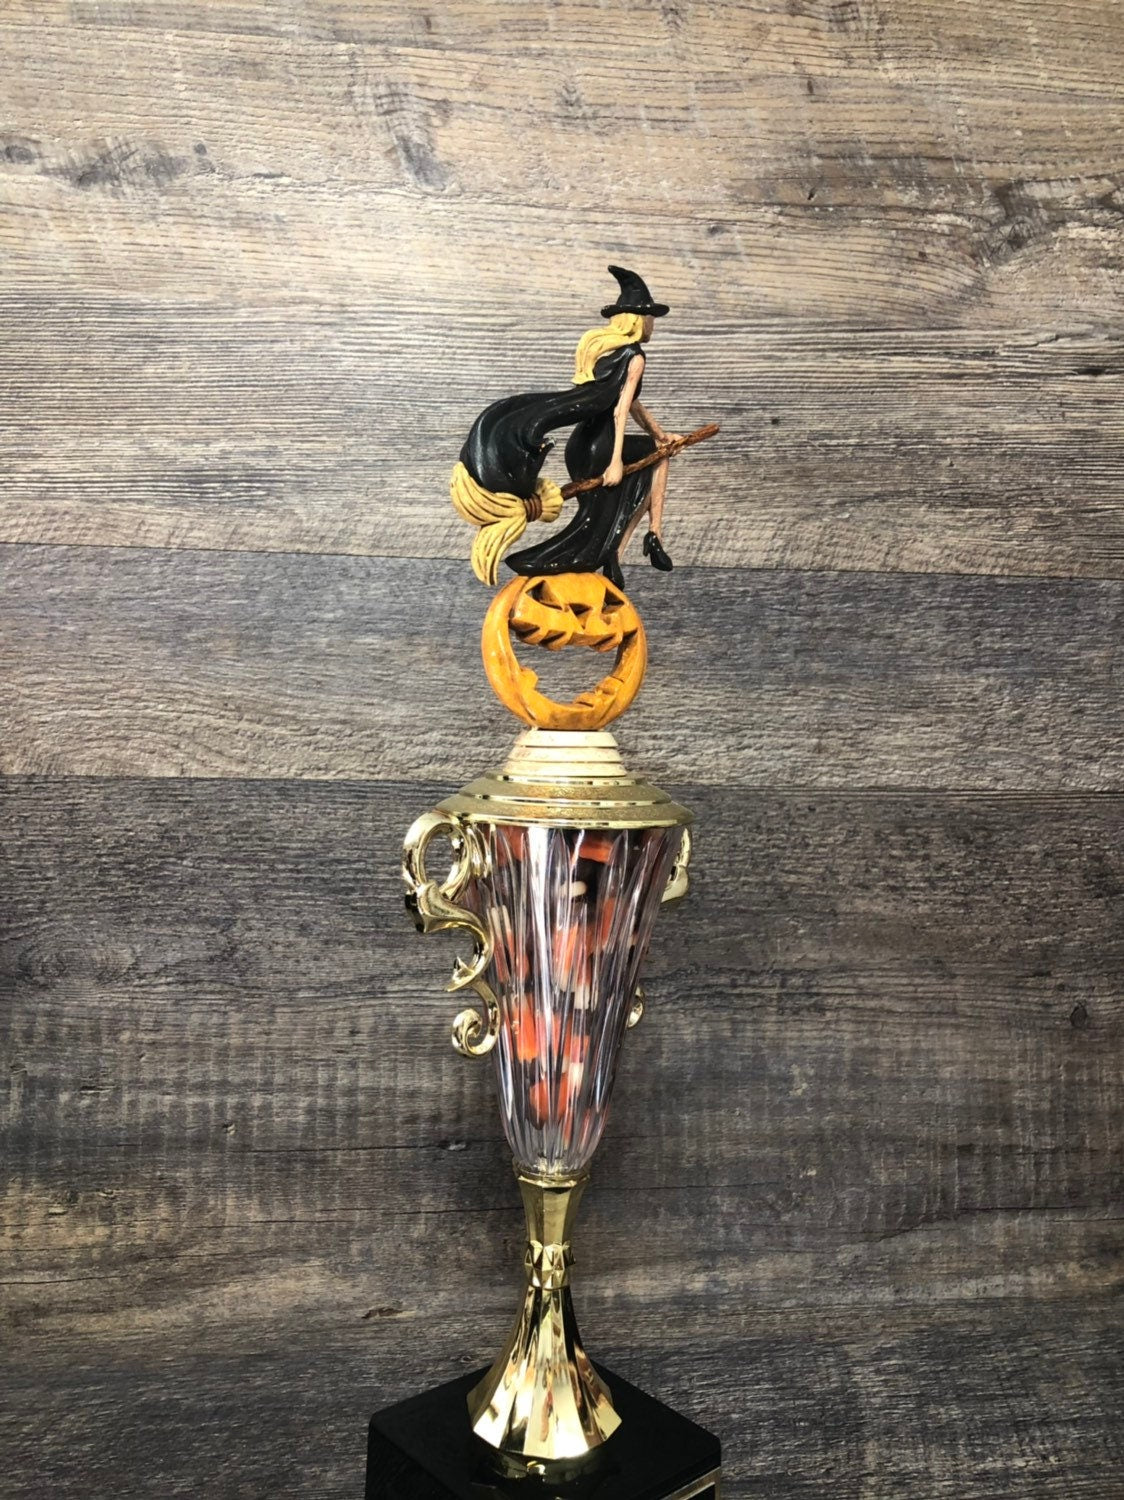 Halloween Trophy Costume Contest Winner Pumpkin Carving Contest Halloween Decor Witch & Pumpkin Trophy Halloween Trophies Costume Winner